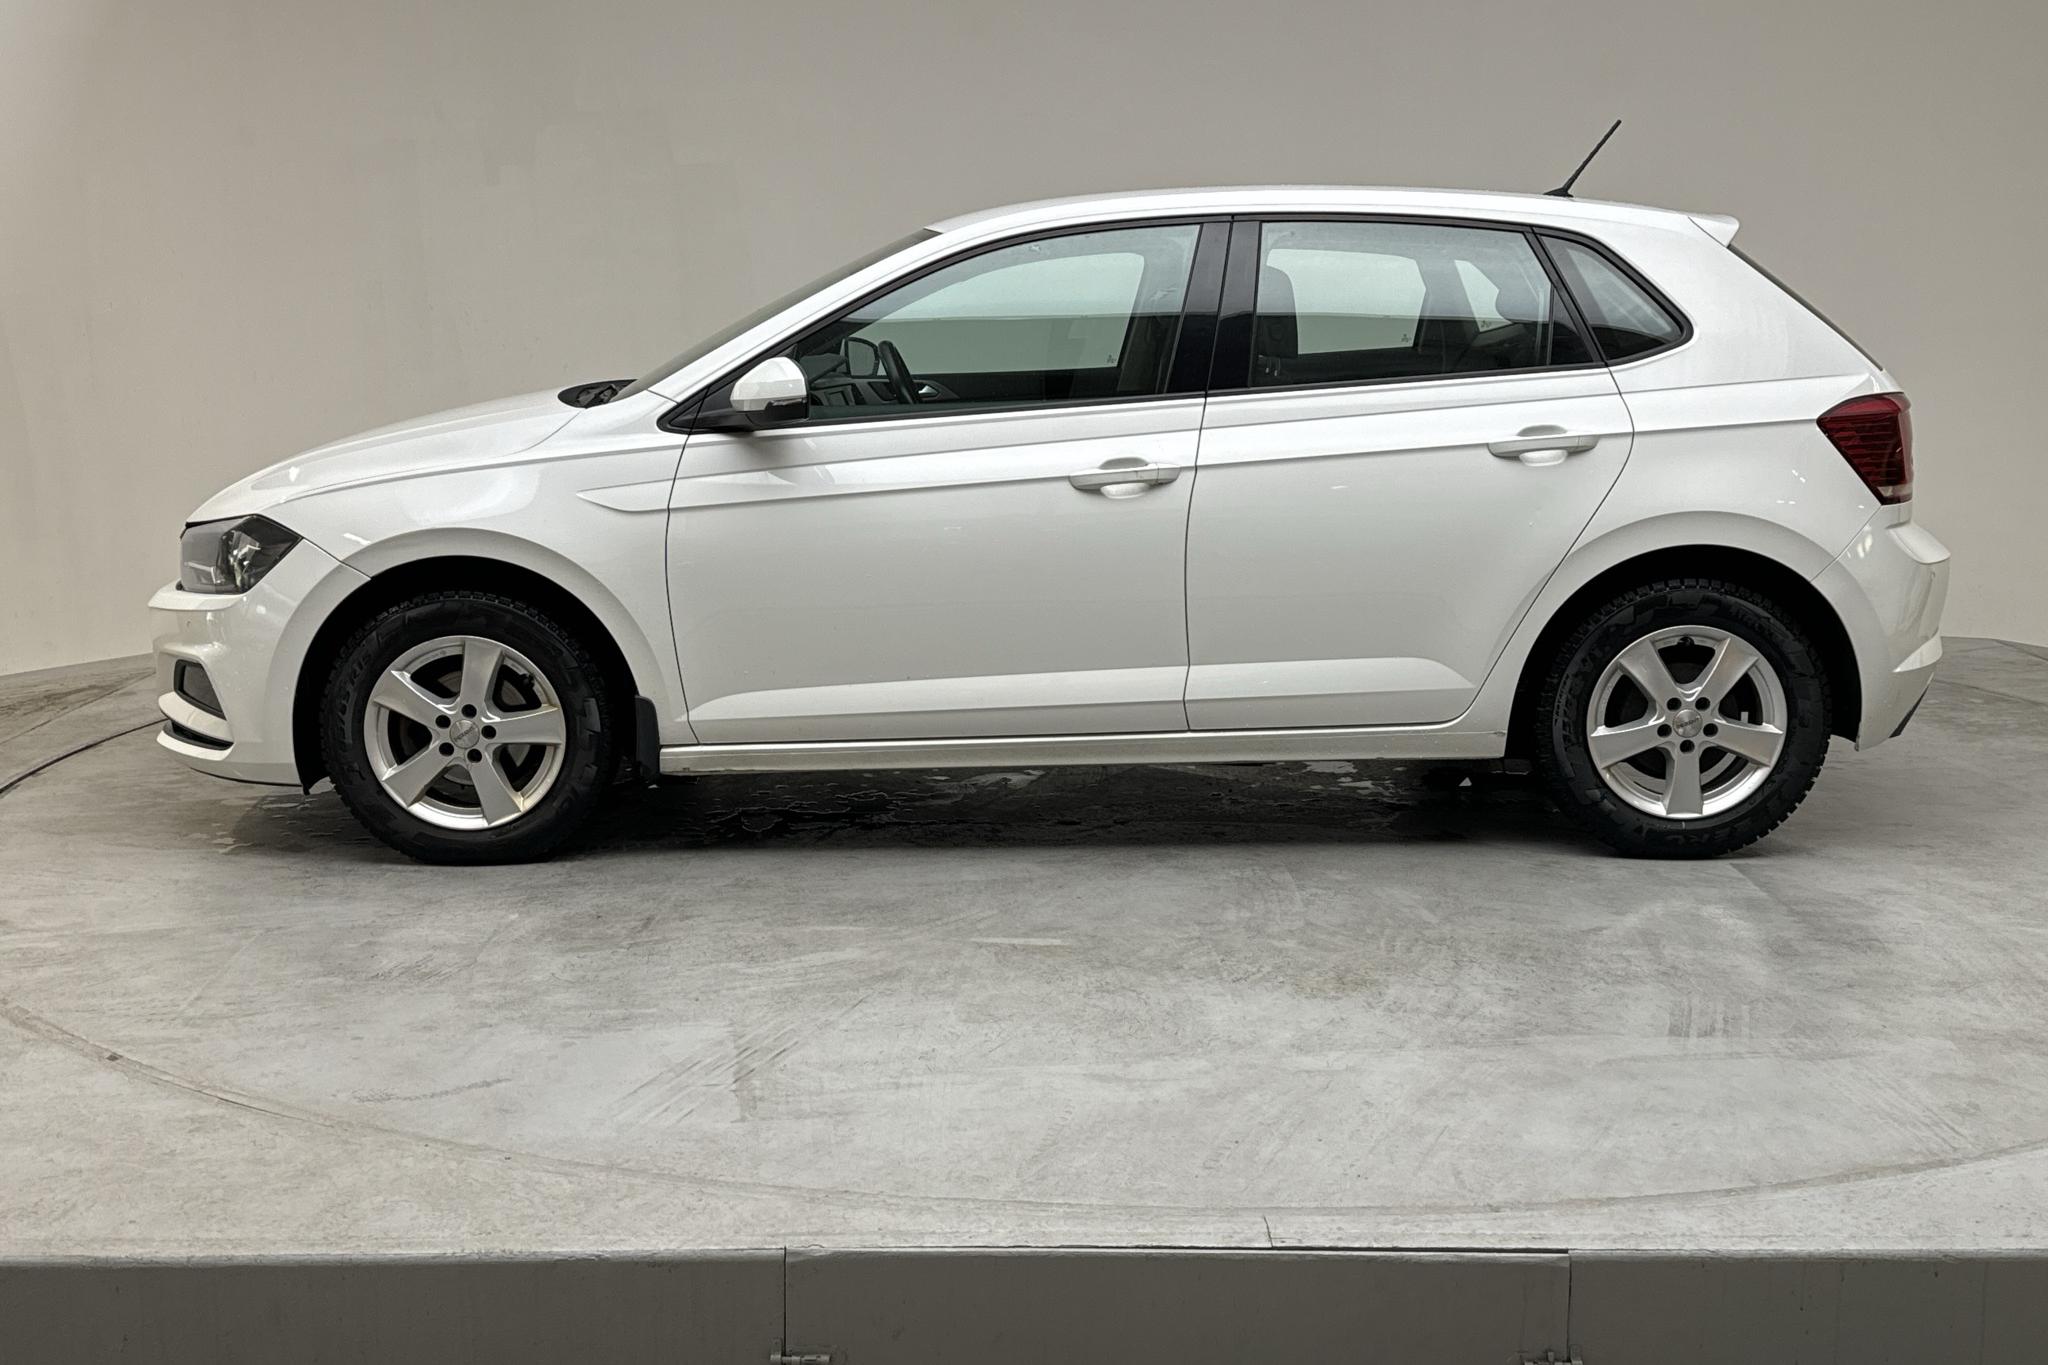 VW Polo 1.0 TSI 5dr (95hk) - 118 440 km - Automatic - white - 2018